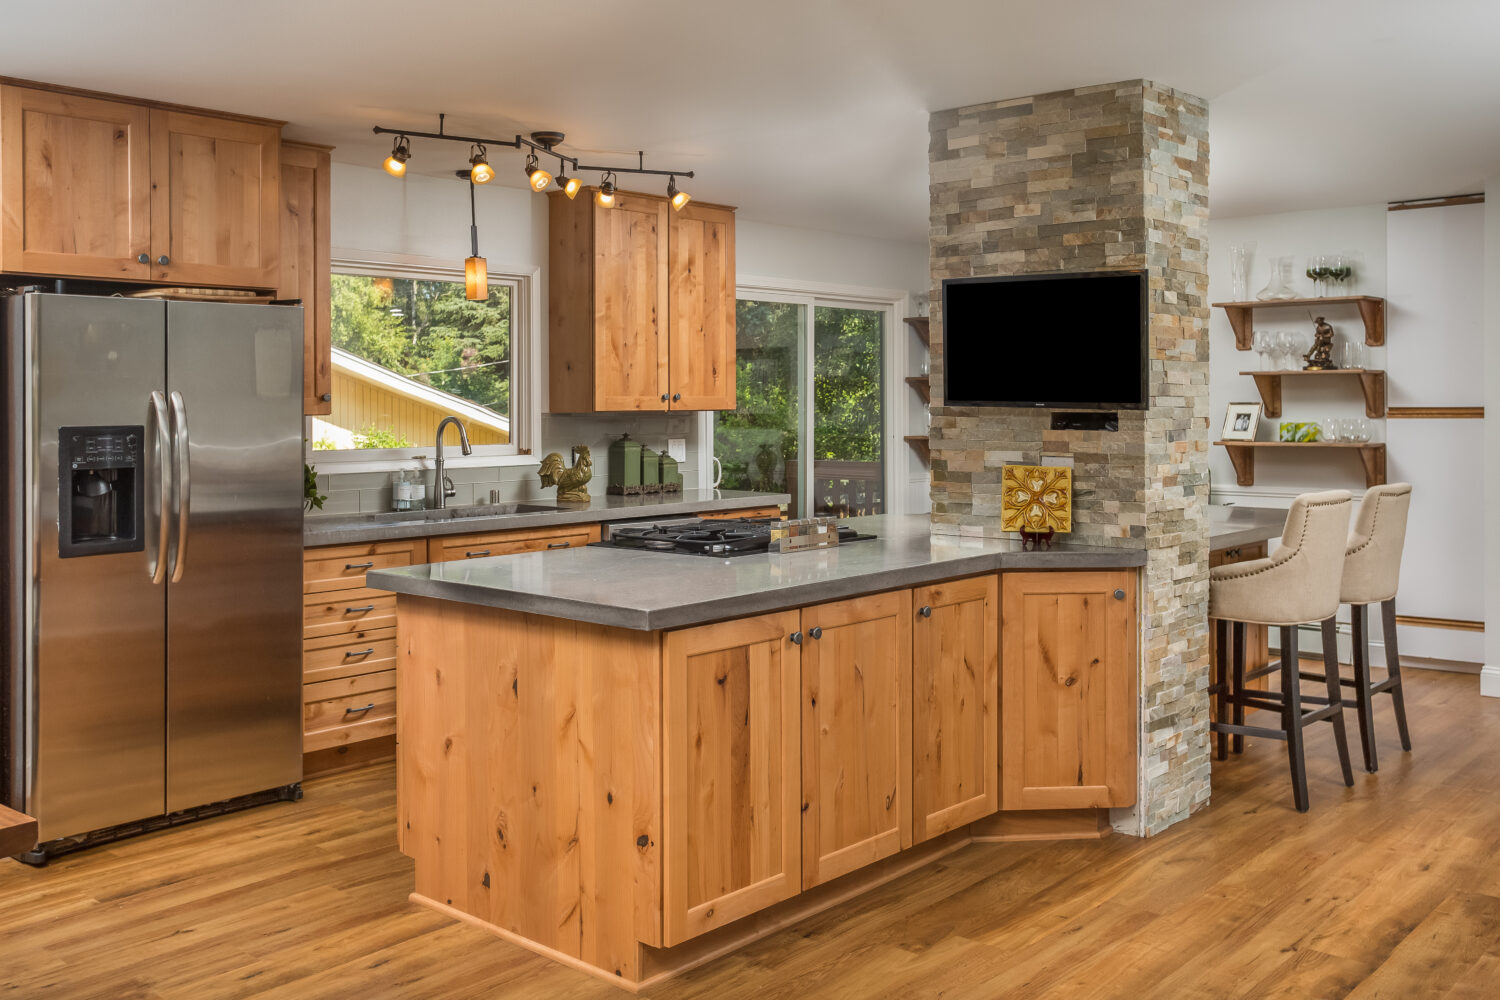 knotty alder kitchen cabinet design